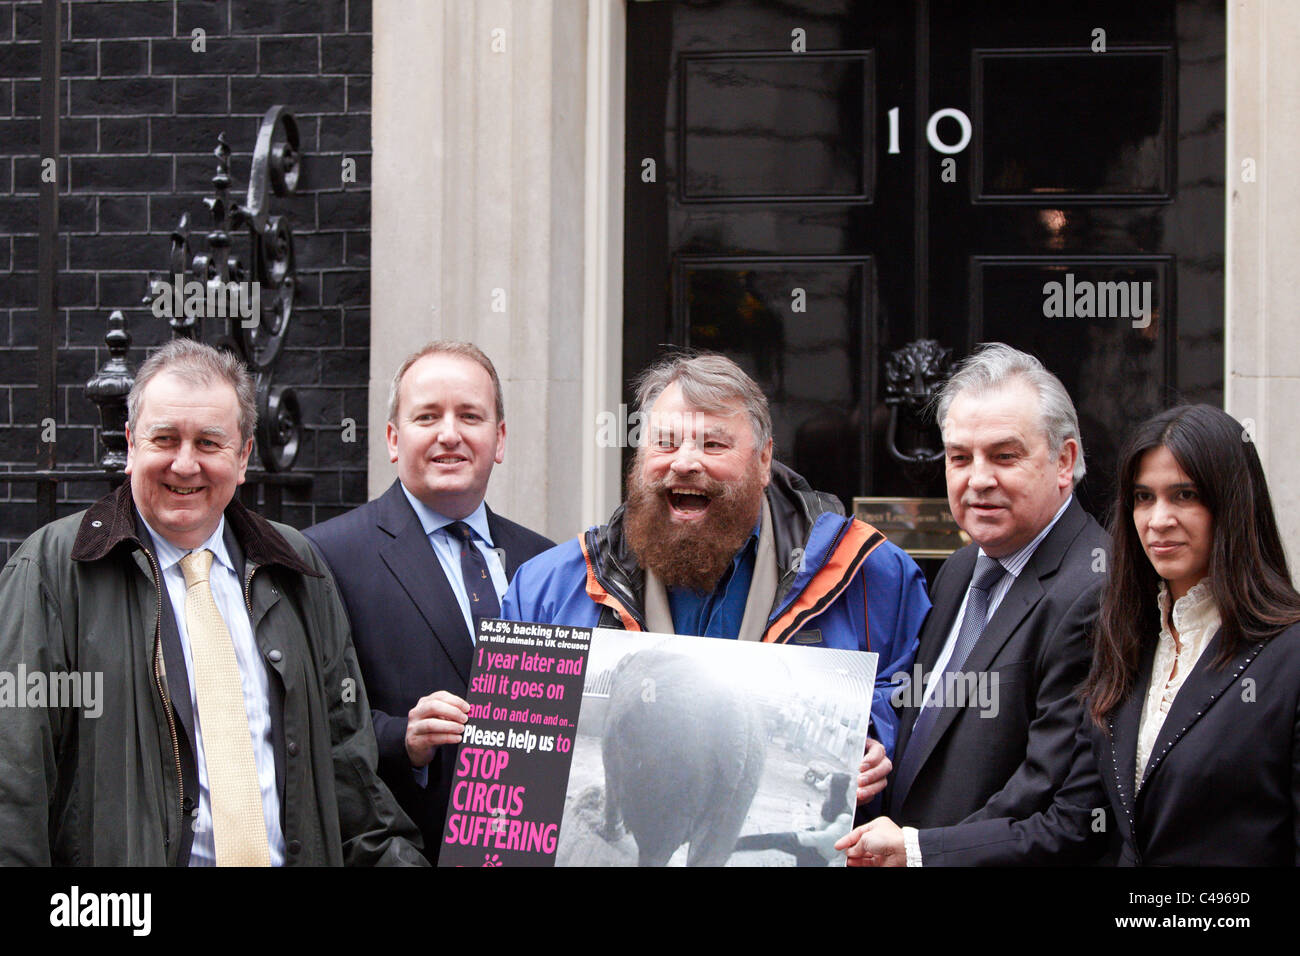 Acteur brian blessed hands dans une carte postale géante à Downing Street aujourd'hui demande une interdiction sur les animaux de cirque. Banque D'Images